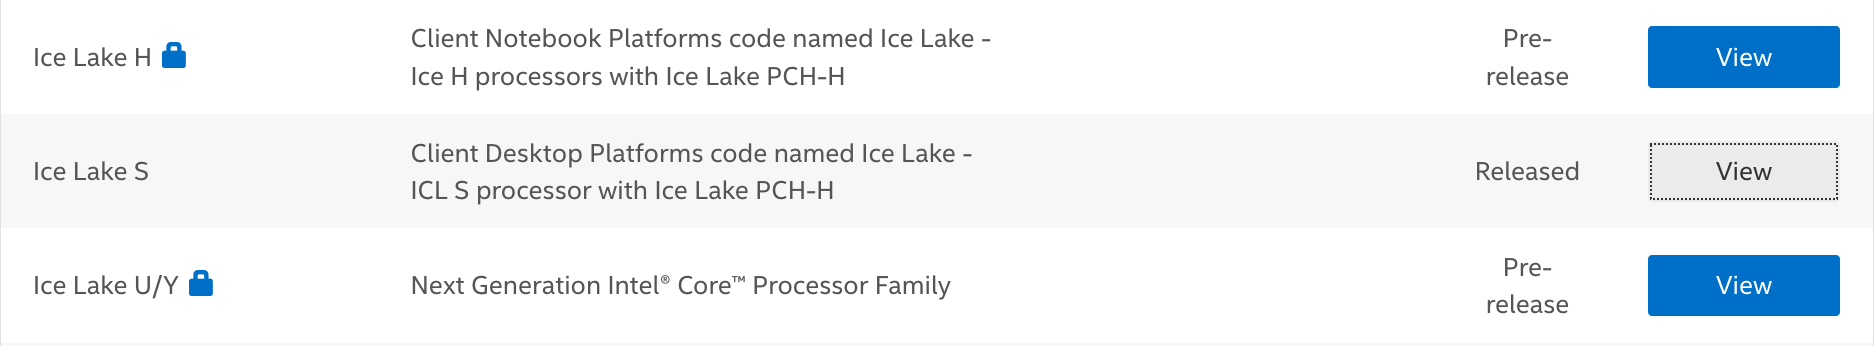 Ice Lake für alle Marktsegmente